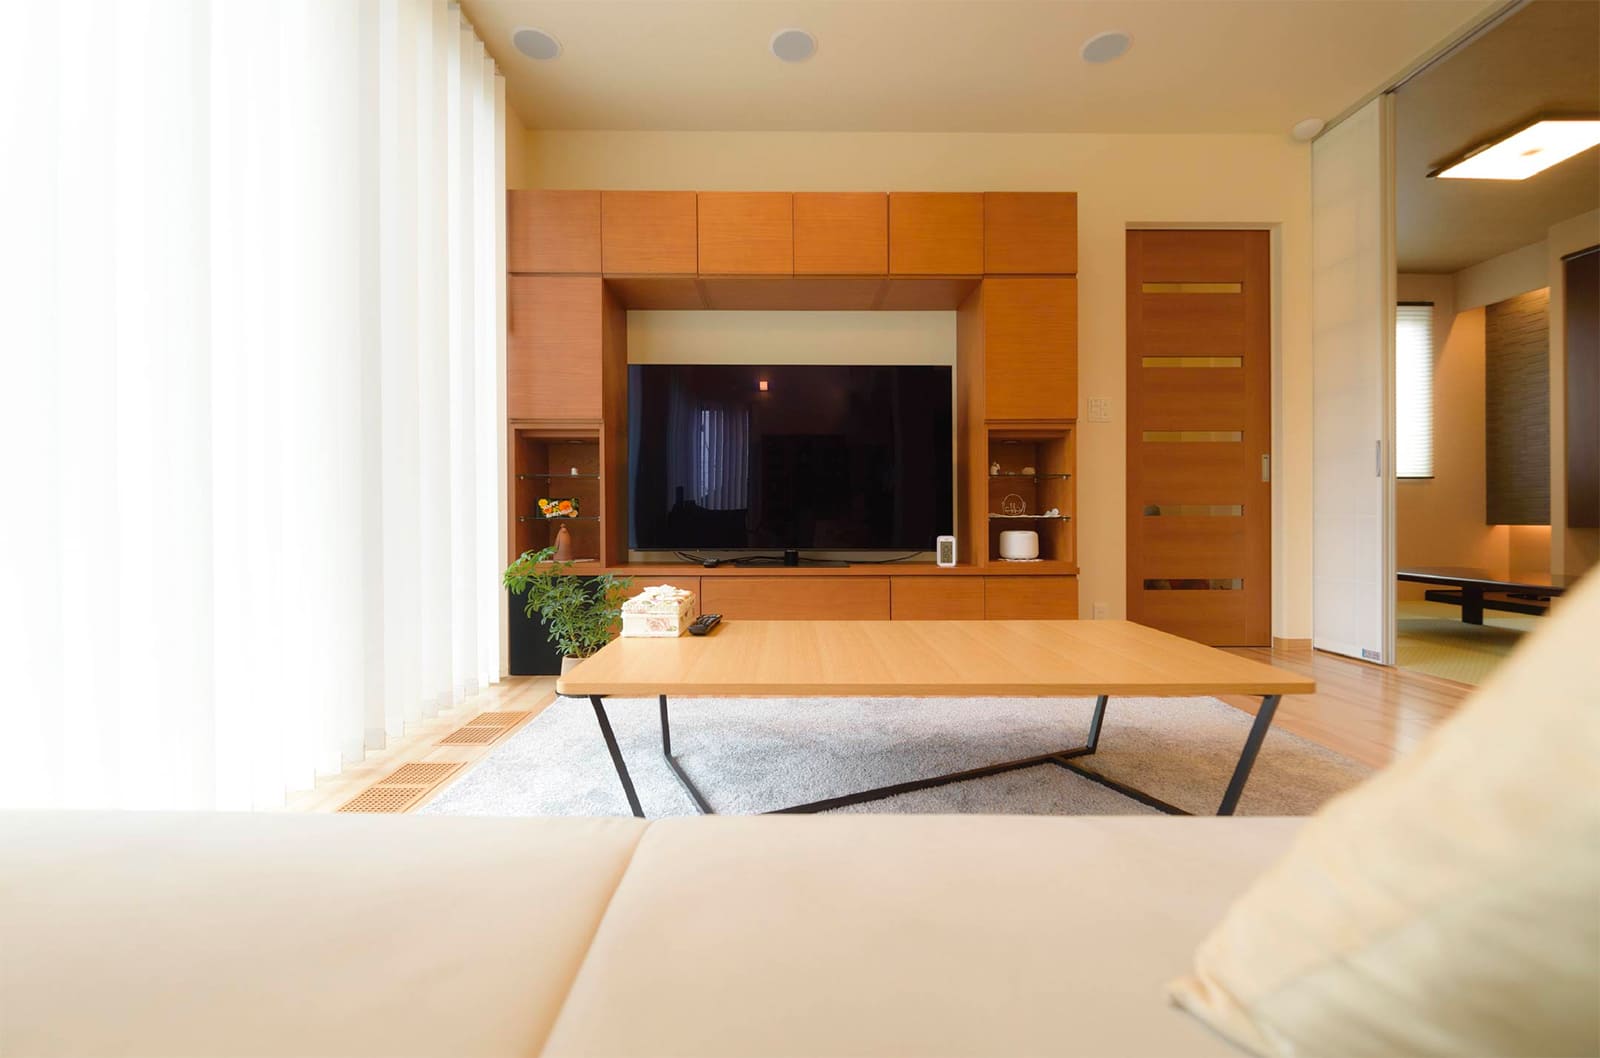 東京セキスイハイム建築実例_収納と飾り棚を兼ねたテレビボードを配したリビング